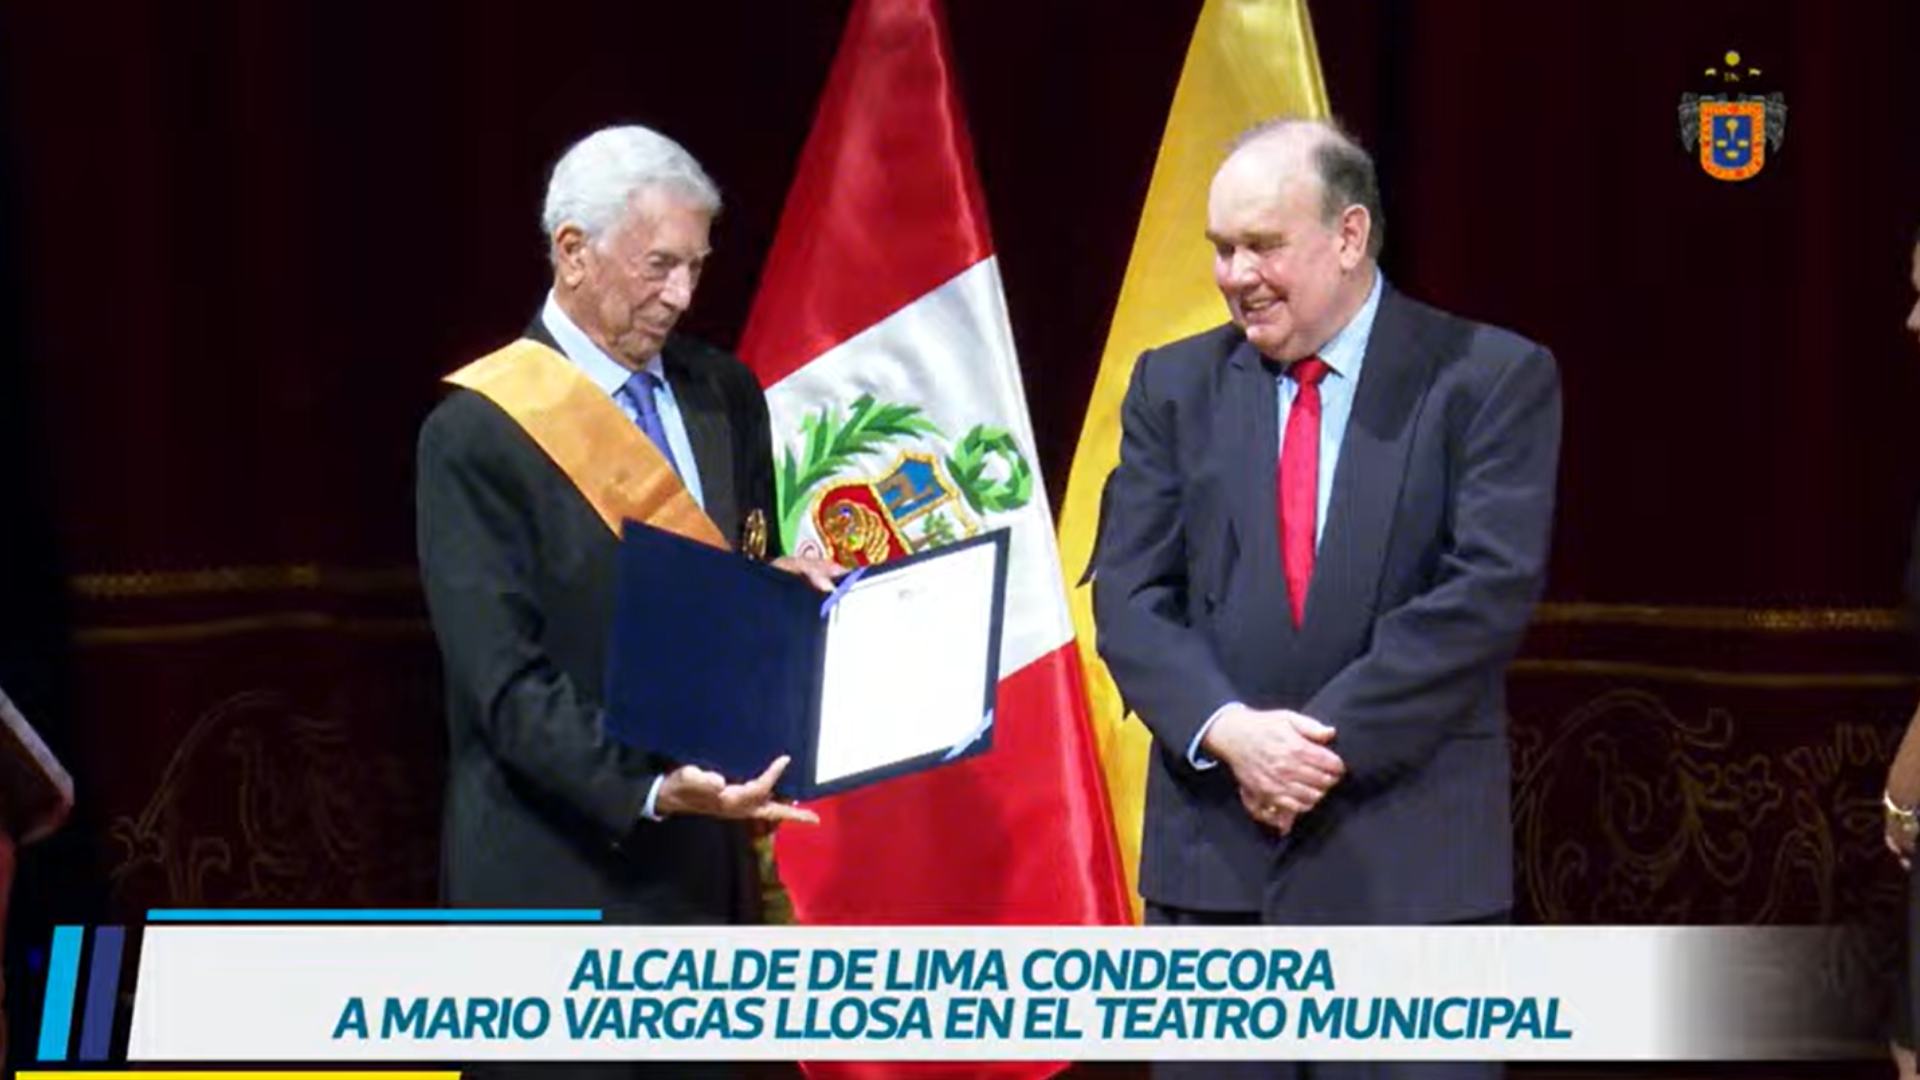 Alcalde de Lima condecoró al escritor peruano Mario Vargas Llosa.
Foto: MML